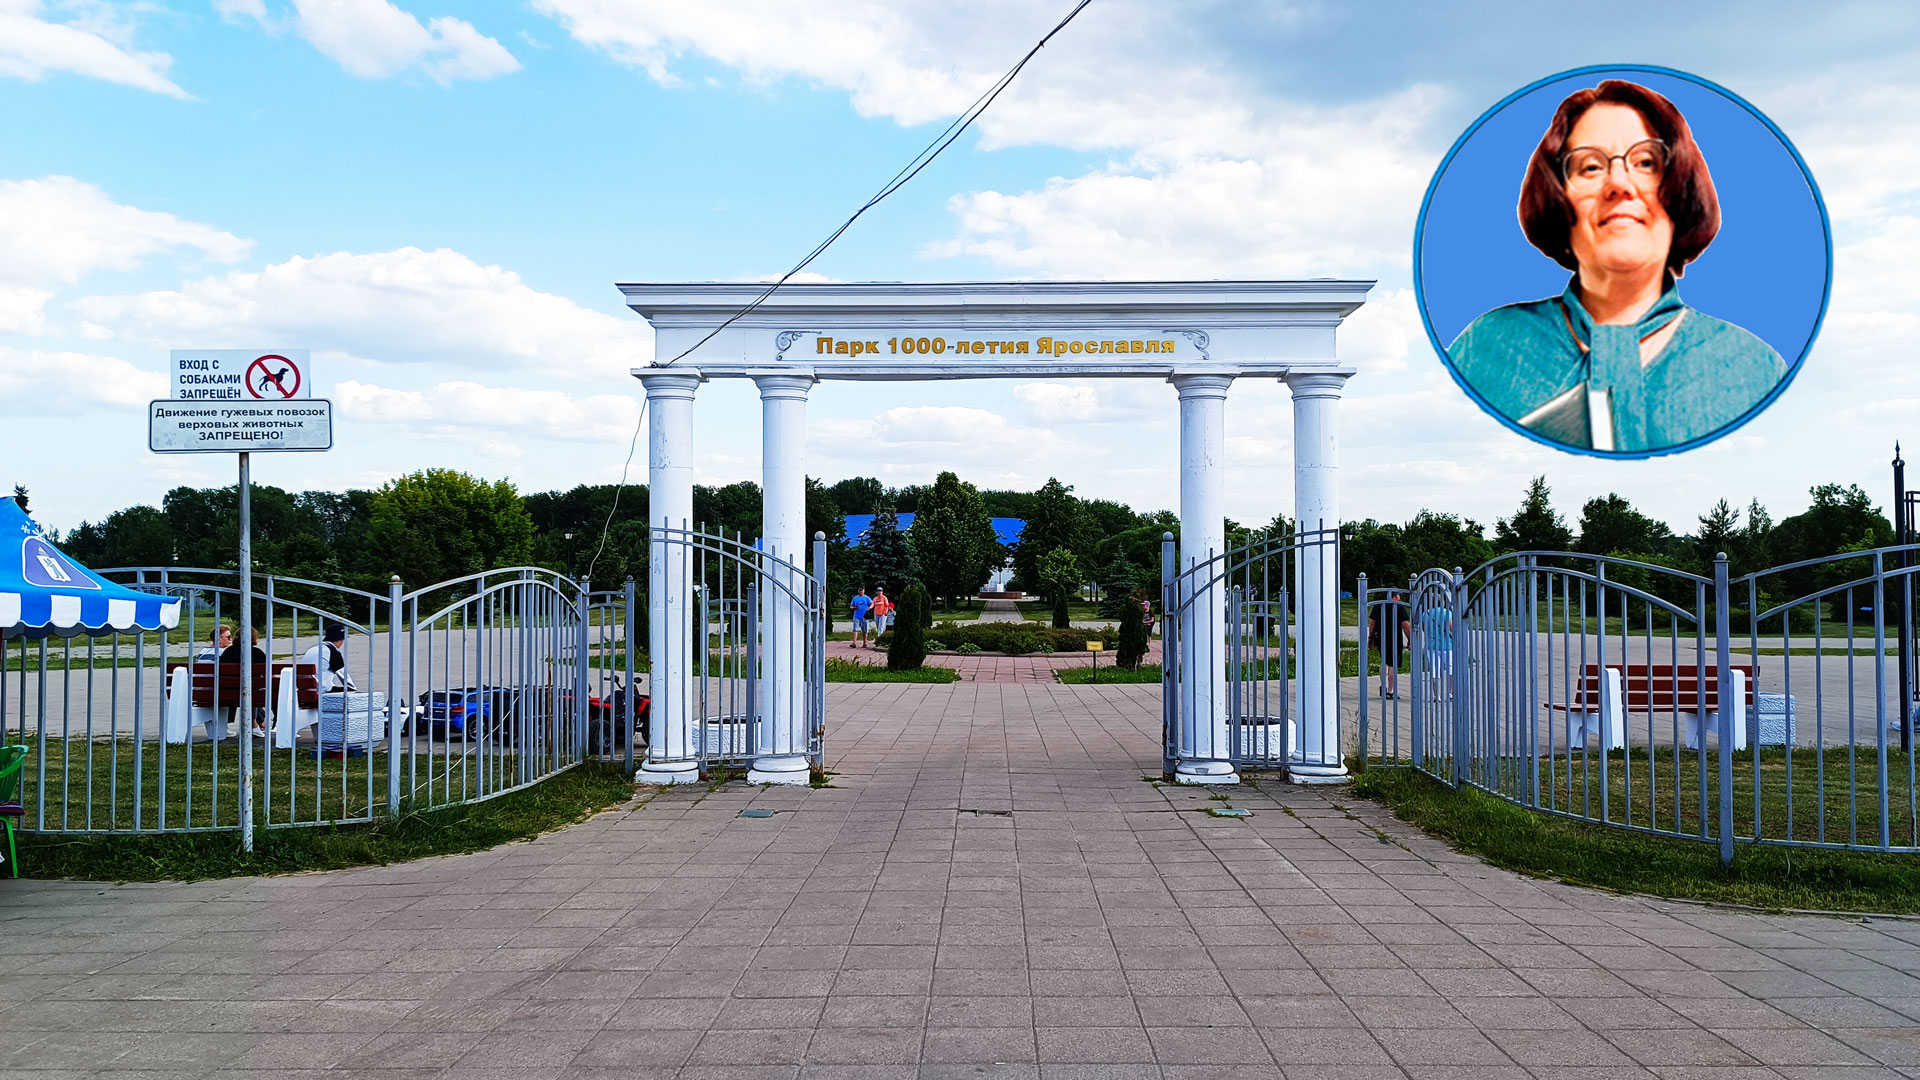 Парк 1000 летия Ярославля: адрес, развлечения, фото.